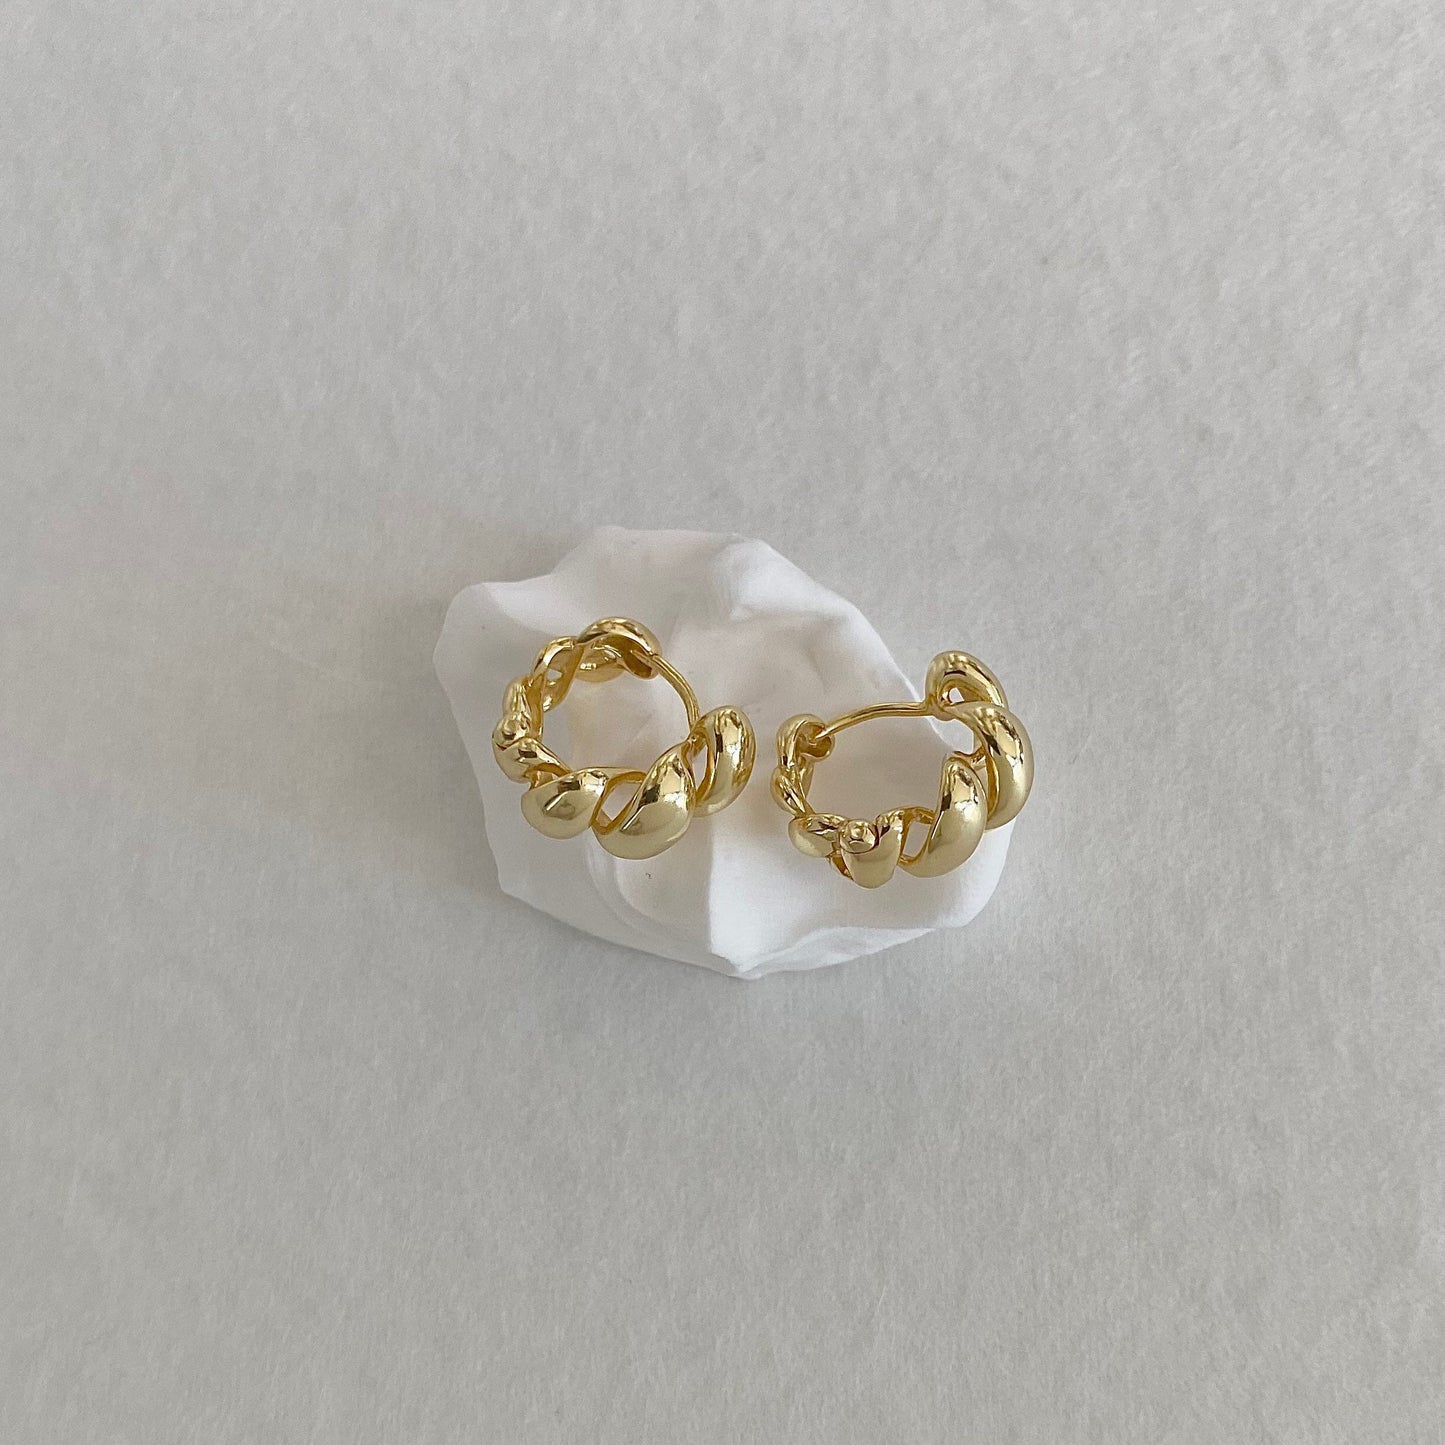 Petite Golden Croissant S925 18k Gold-Plated Earrings